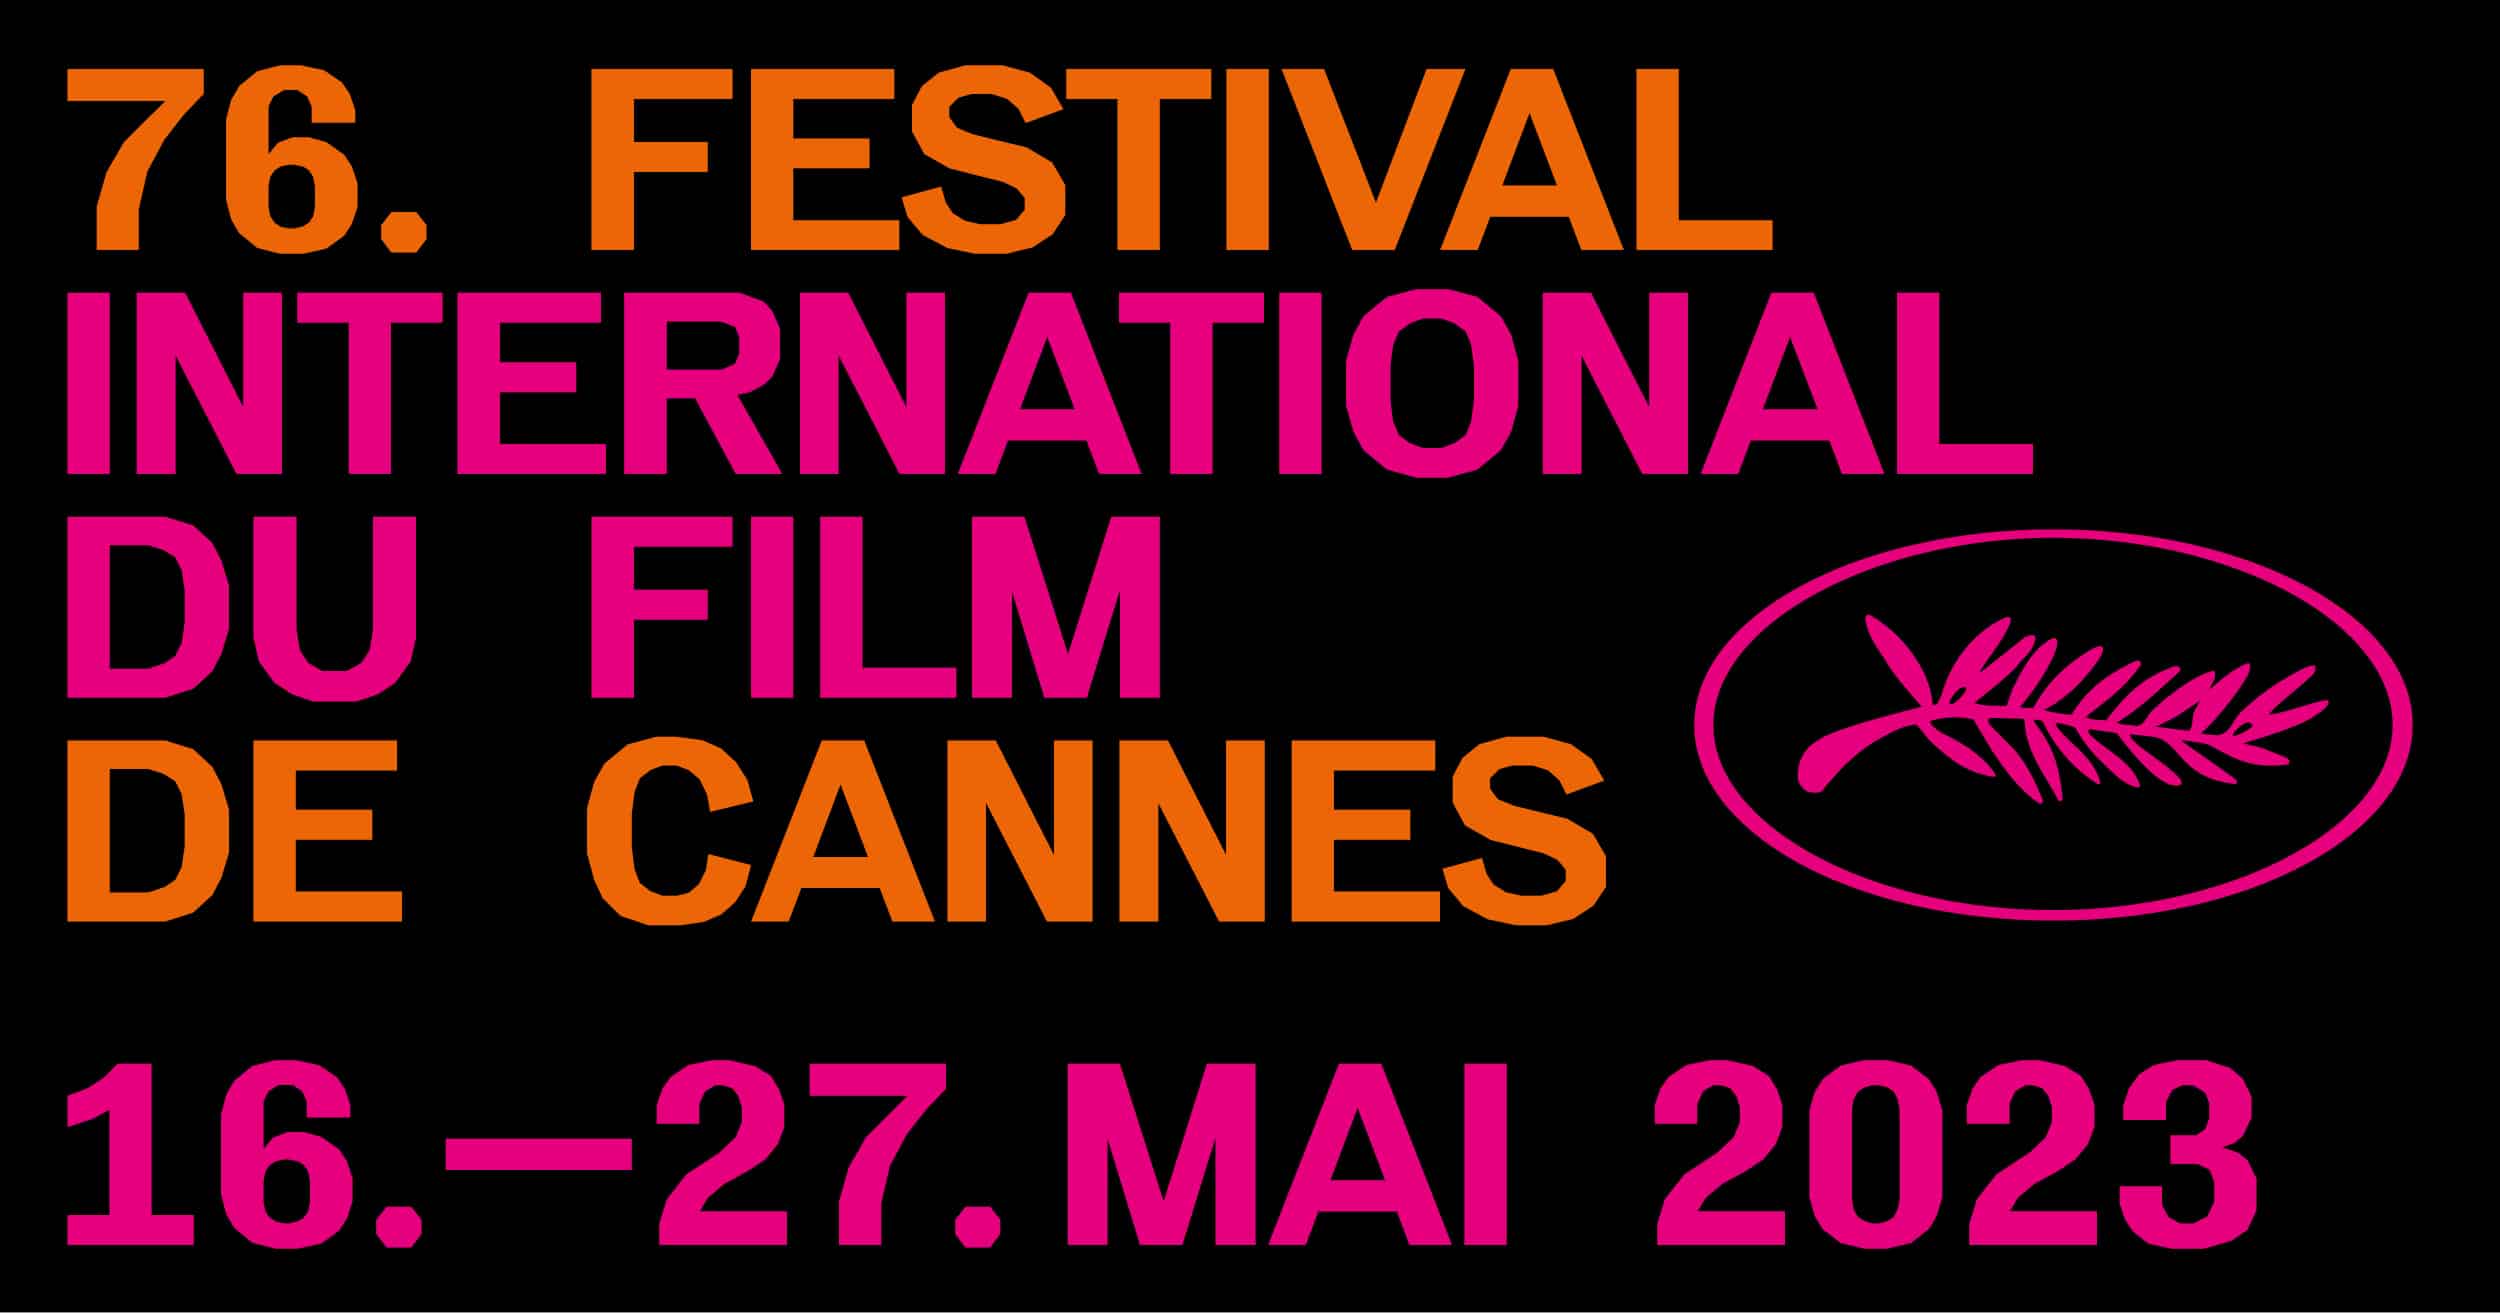 Cannes Film Festival 2023 Full List Of Winners